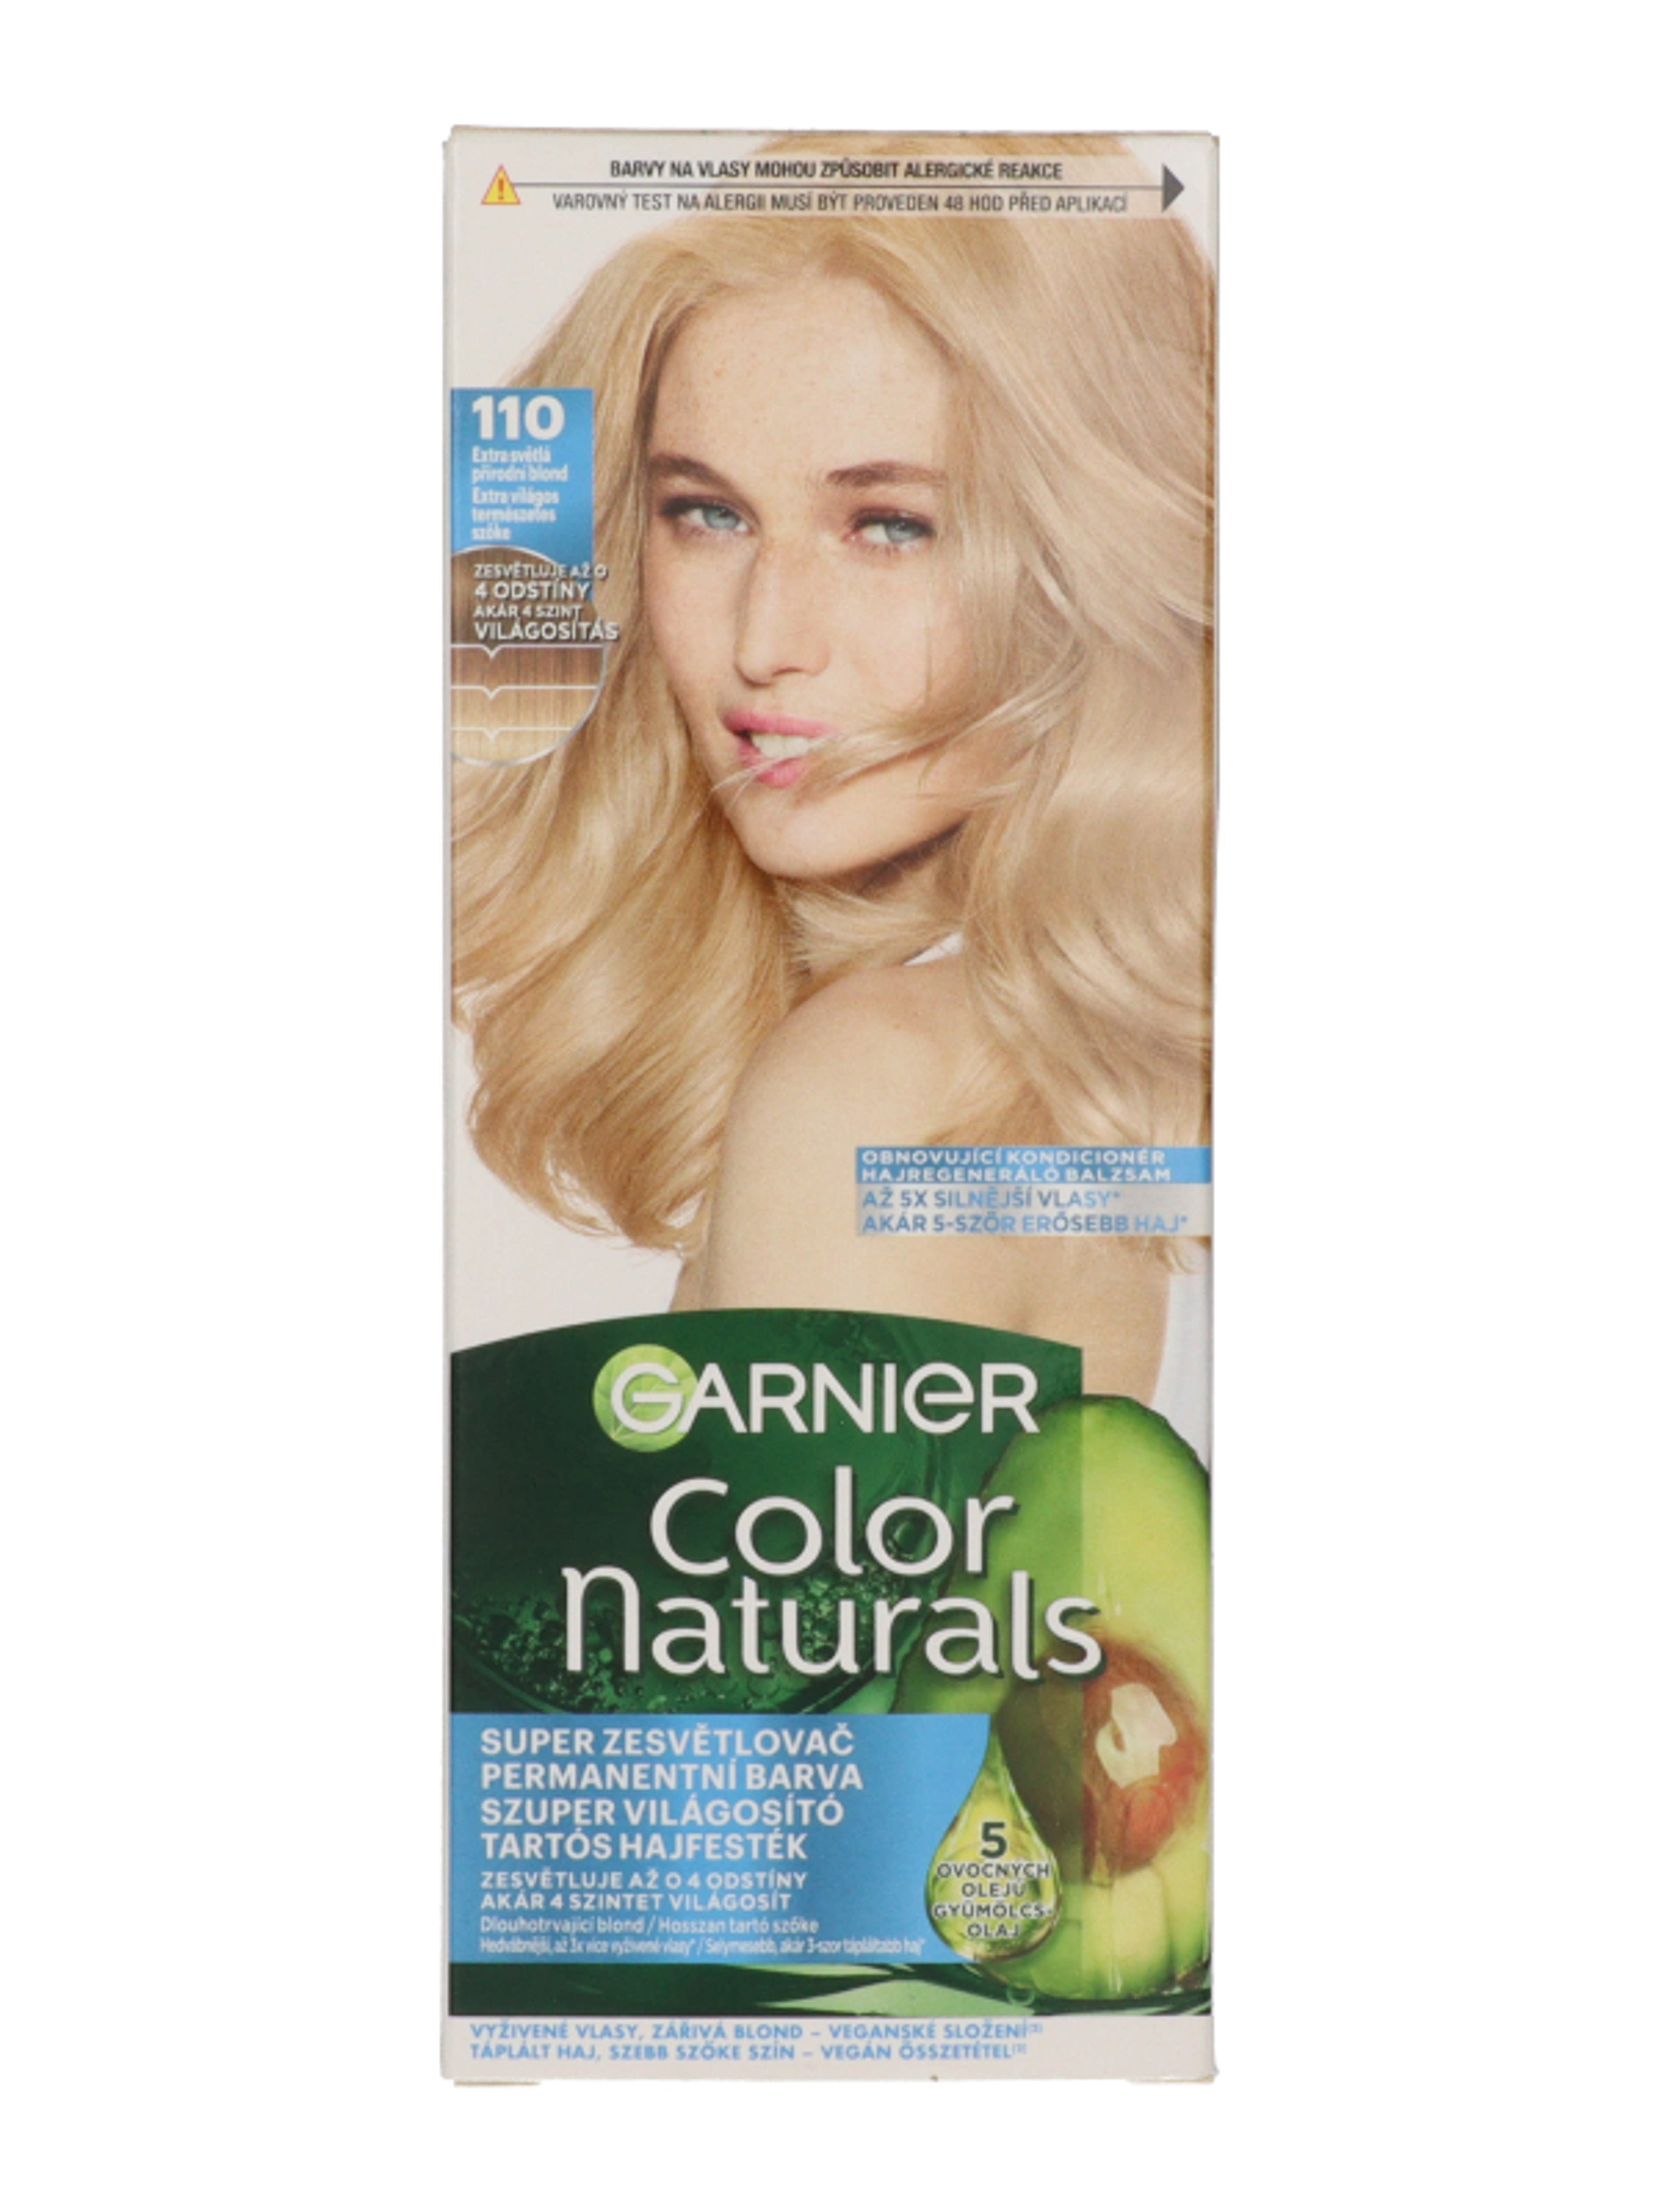 Garnier Color Naturals Tartós hajfesték /110 Extra Light Natural Blond - 1 db-1